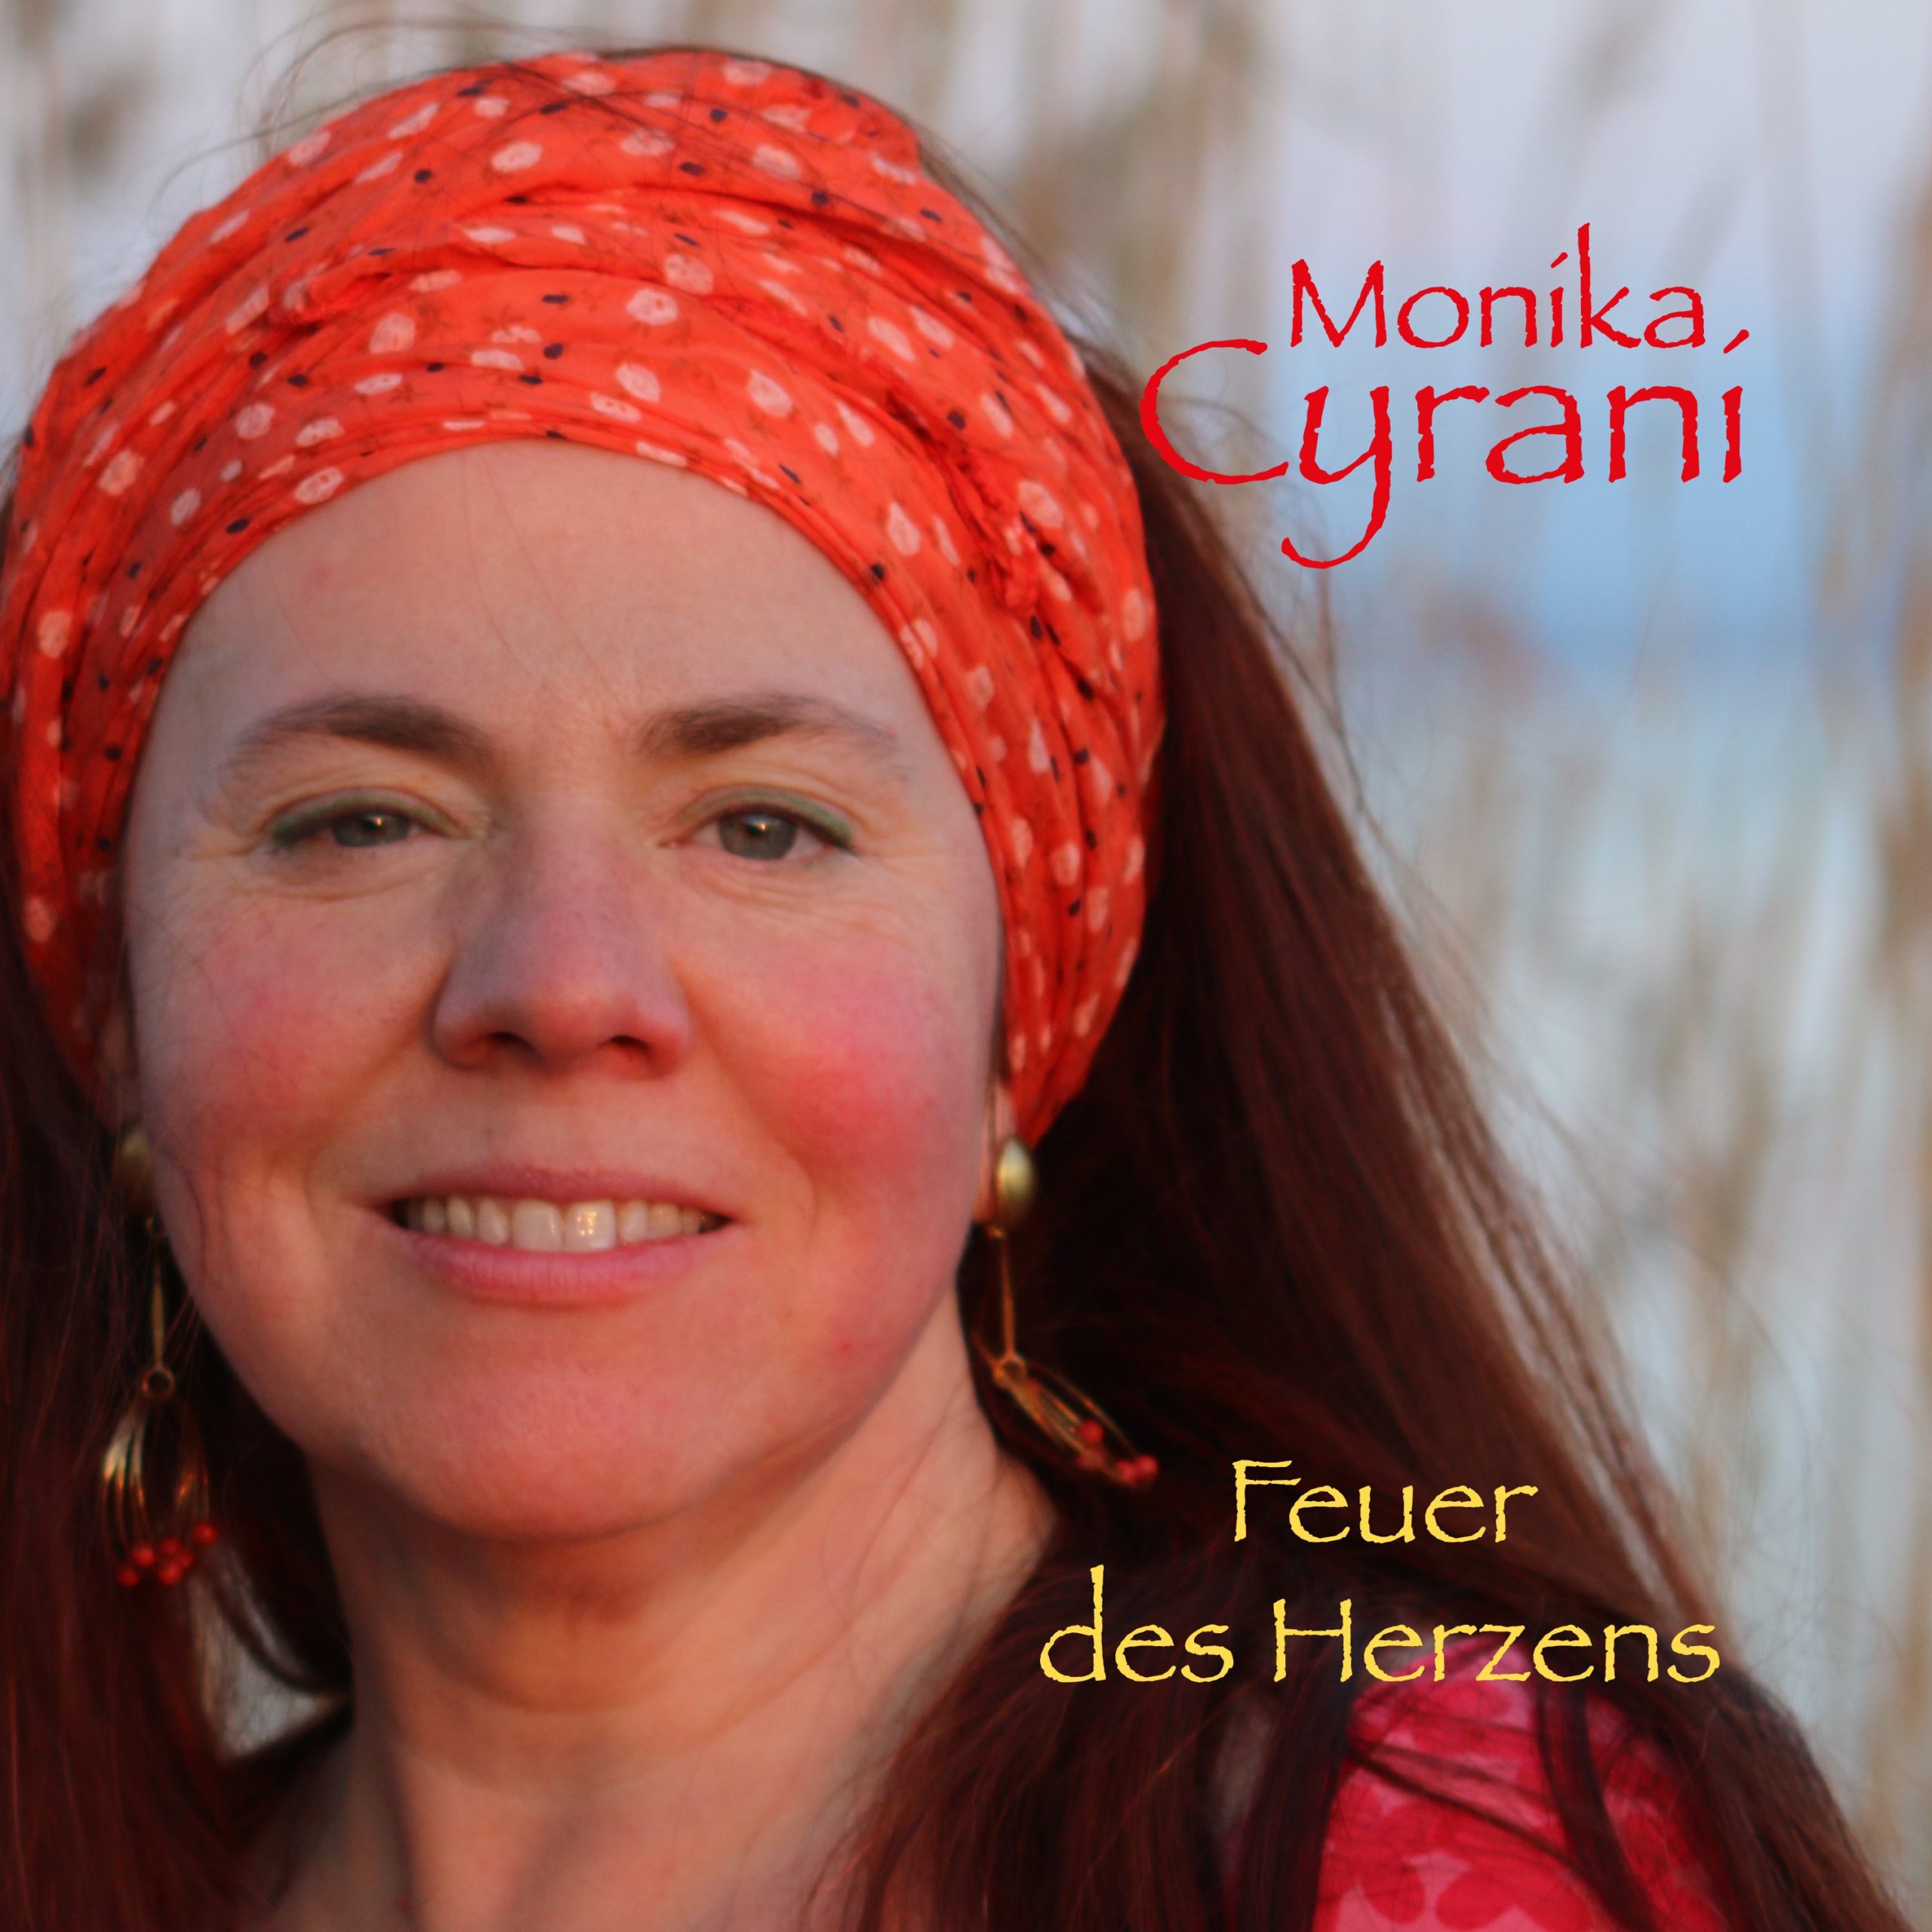 Feuer des Herzens Cover | Monika Cyrani - Sängerin